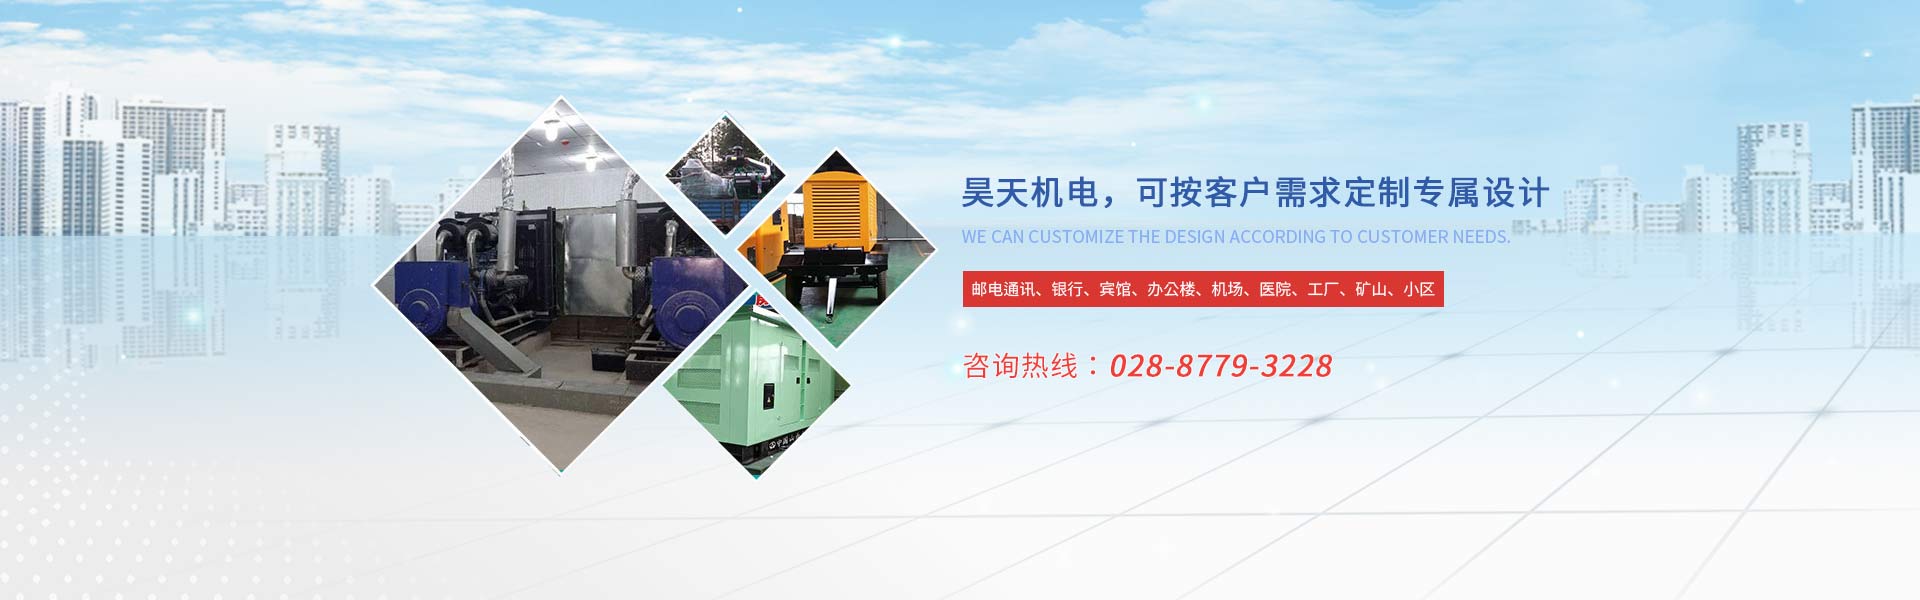 400KW上海乾能发电机组厂家价格_600KW柴油发电机组厂家价格-成都协力昊天机电设备有限公司